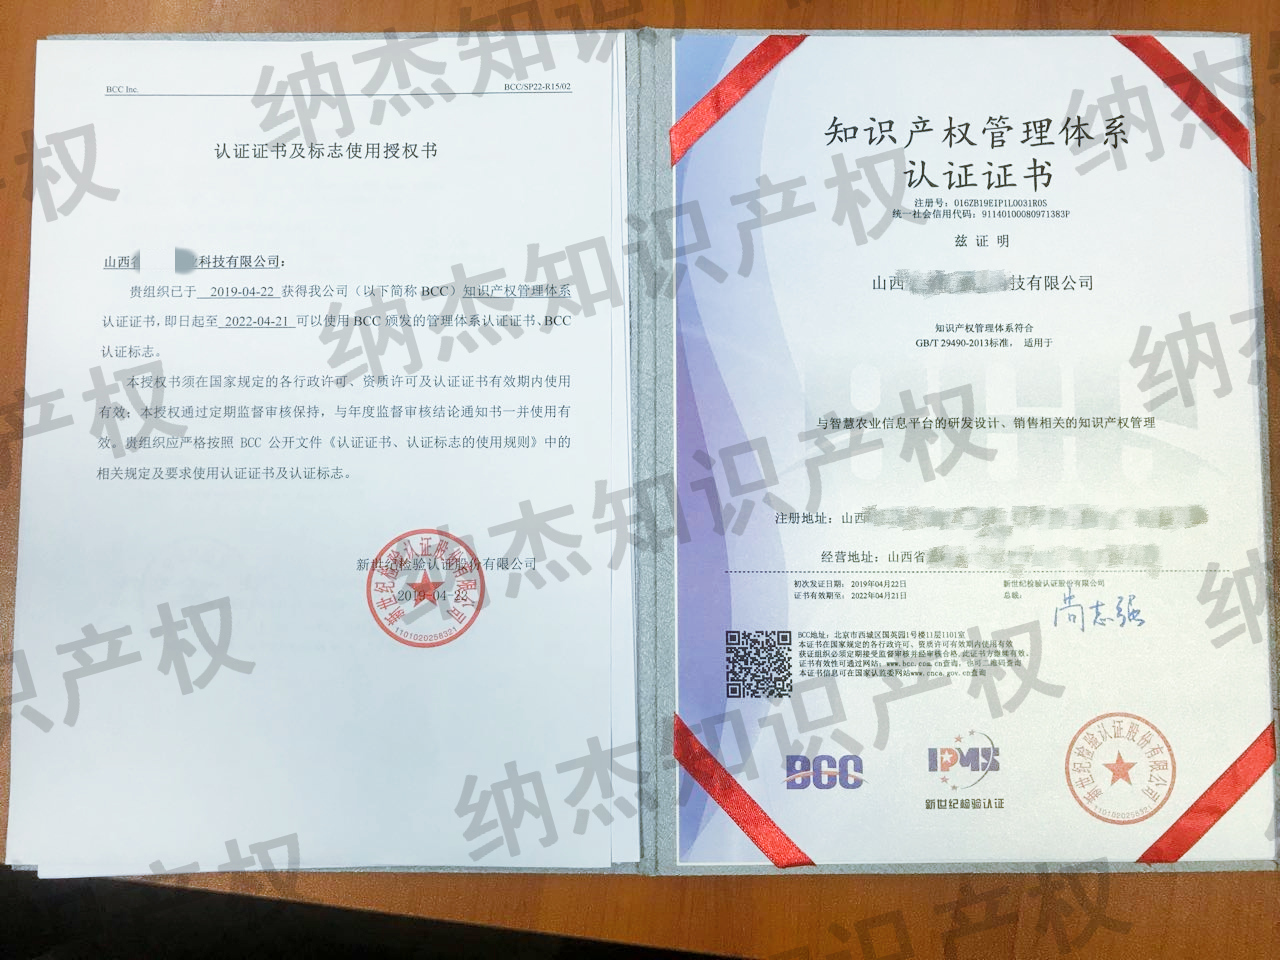 山西某科技公司获得的《知识产权管理体系认证证书》